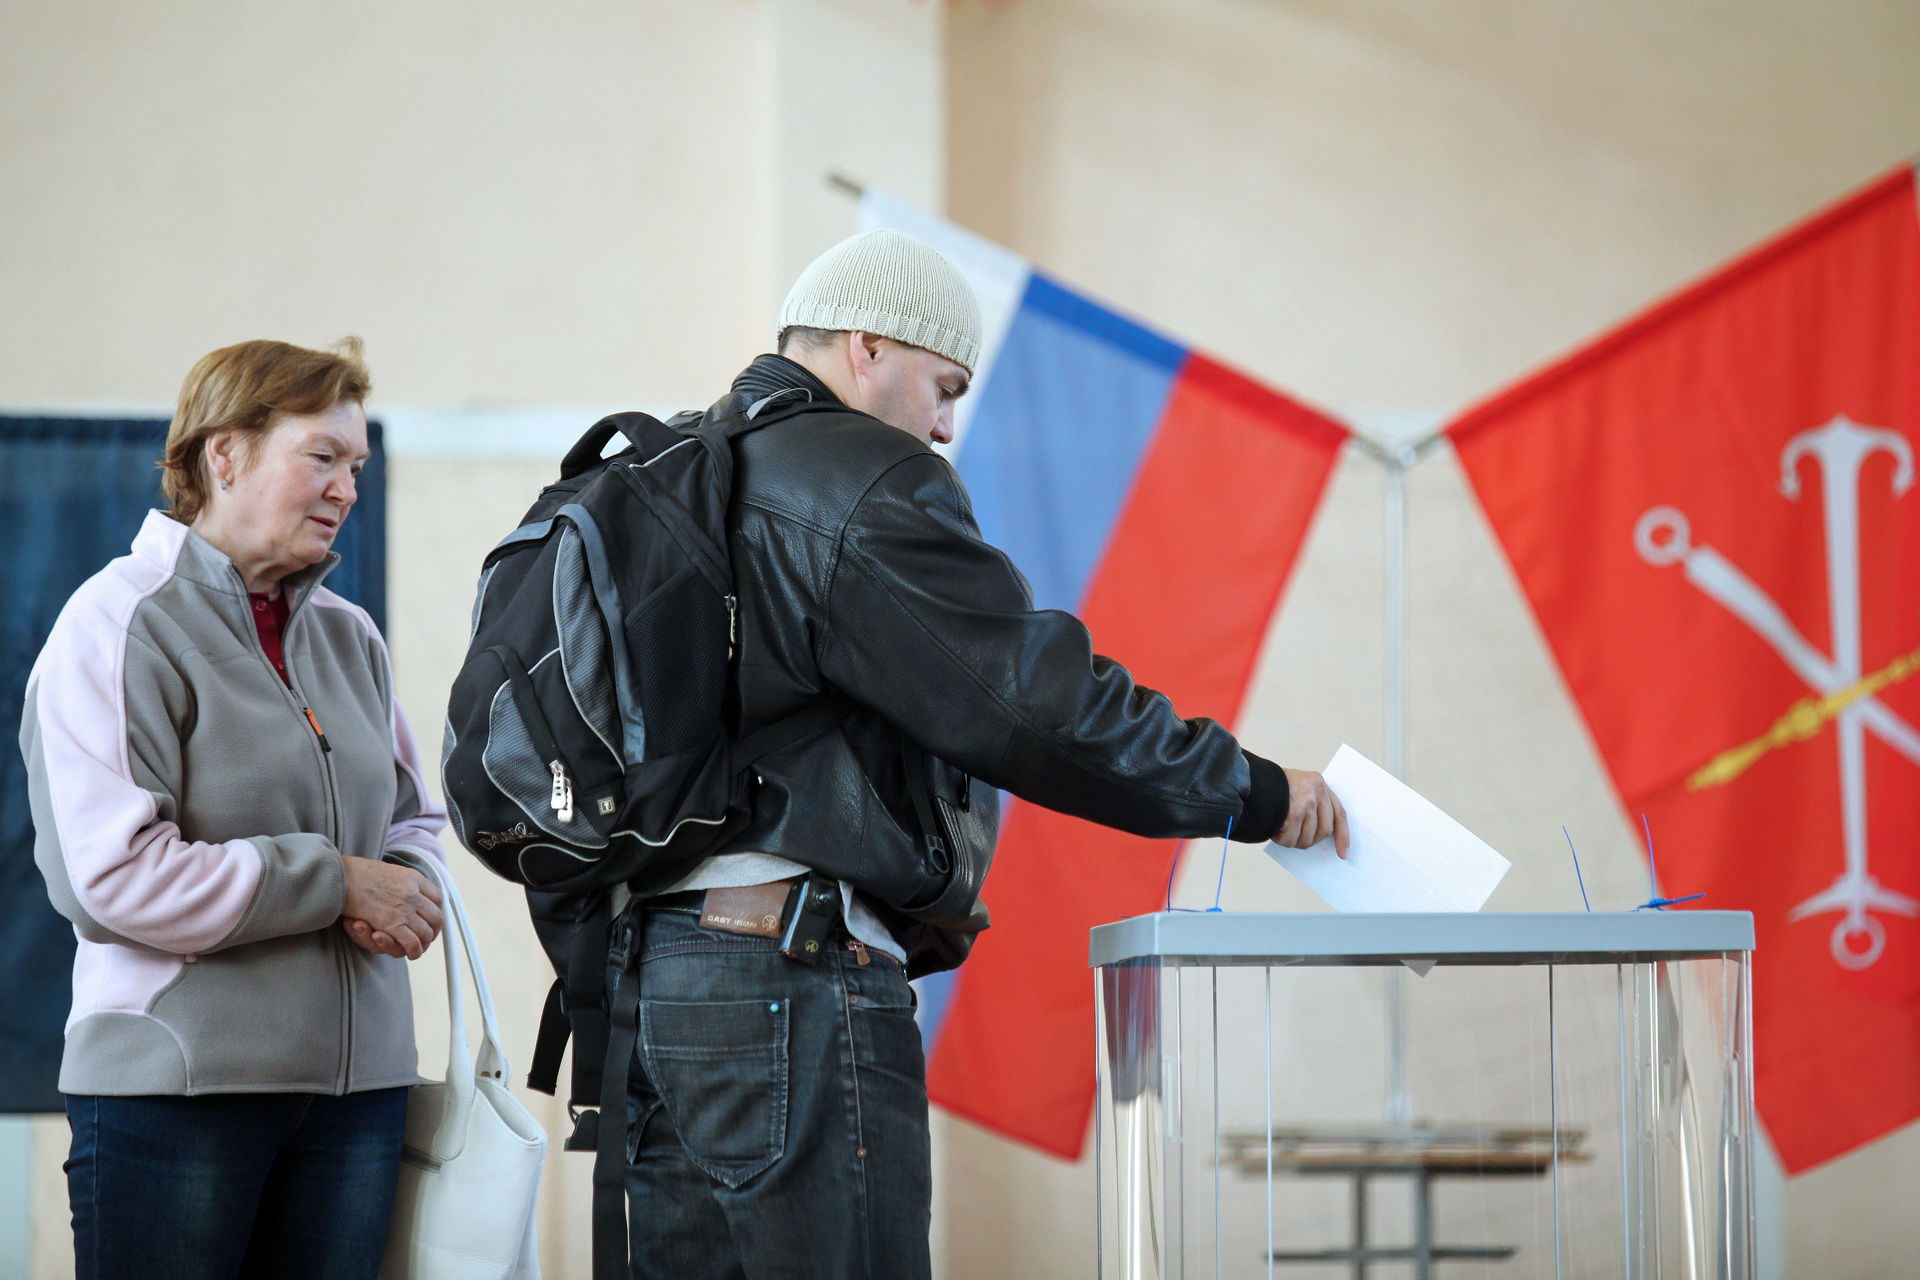 Можно ли проверить проголосовал человек на выборах. Муниципальные выборы. Муниципальные выборы в Москве. Выборы губернатора. Местные выборы в России.